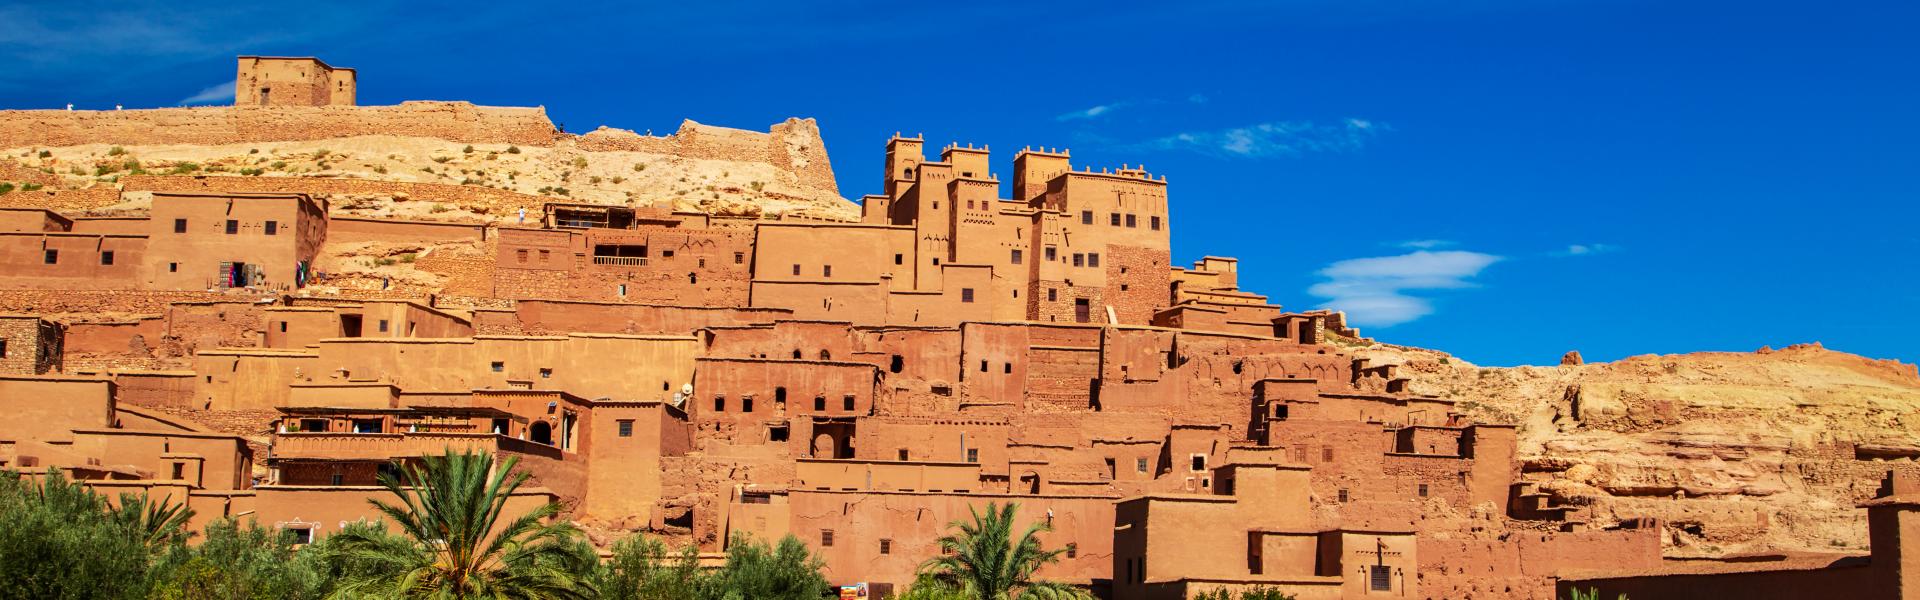 Ferienwohnungen & Ferienhäuser für Urlaub in Marokko - Casamundo